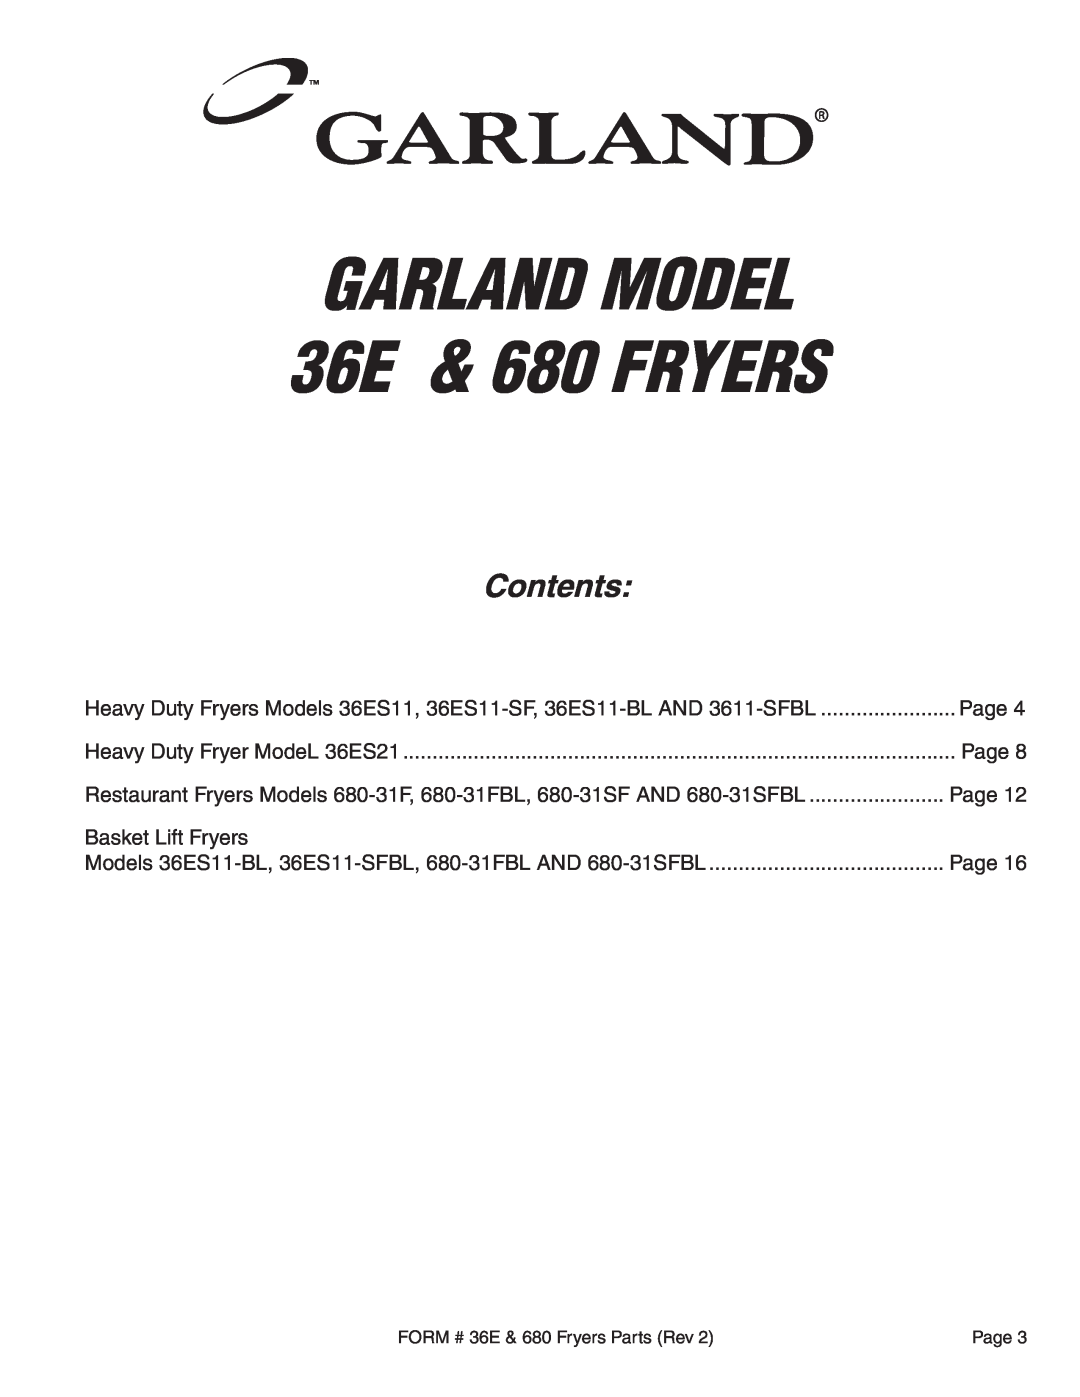 Garland 680-31FBL Page, Basket Lift Fryers, GARLAND MODEL 36E & 680 FRYERS, Contents, Heavy Duty Fryer ModeL 36ES21 